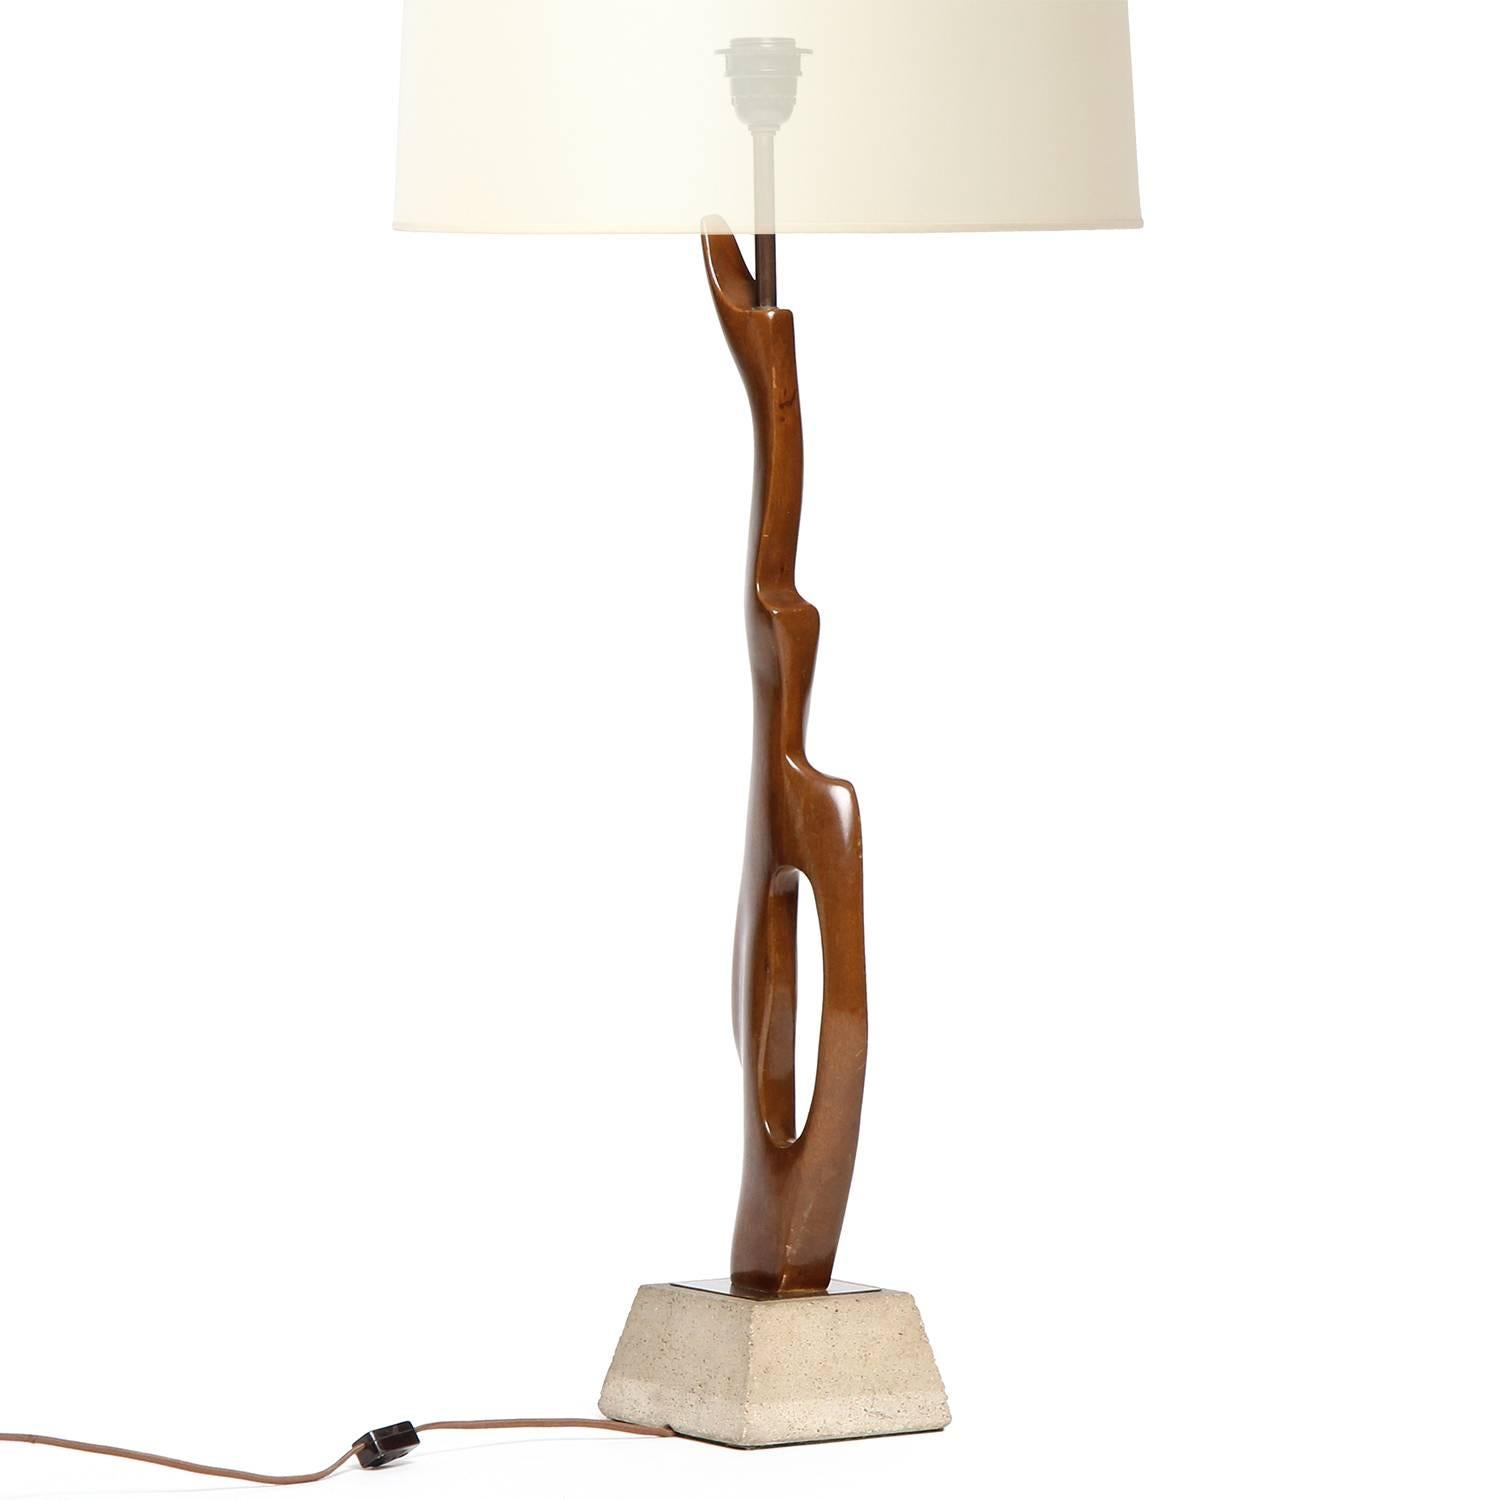 Lampe de table biomorphique haute et expressive sculptée dans une seule pièce d'acajou et montée sur une base trapézoïdale en béton.